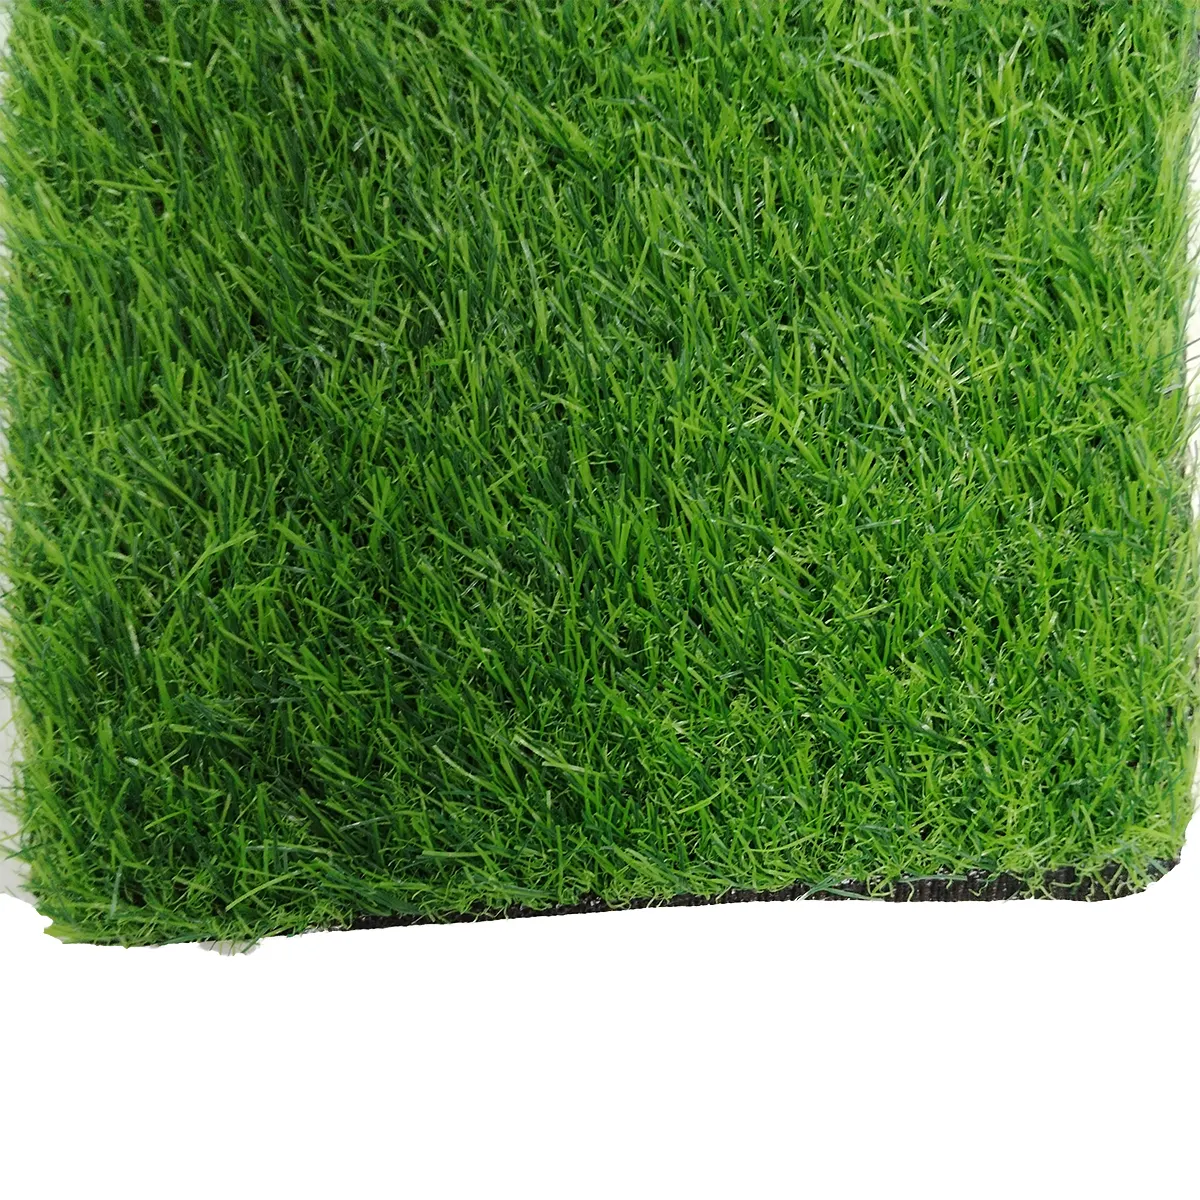 실내 인공 잔디 발코니 체육관 카펫 깔개 바닥 잔디 잔디 부드러운 깔개 매트